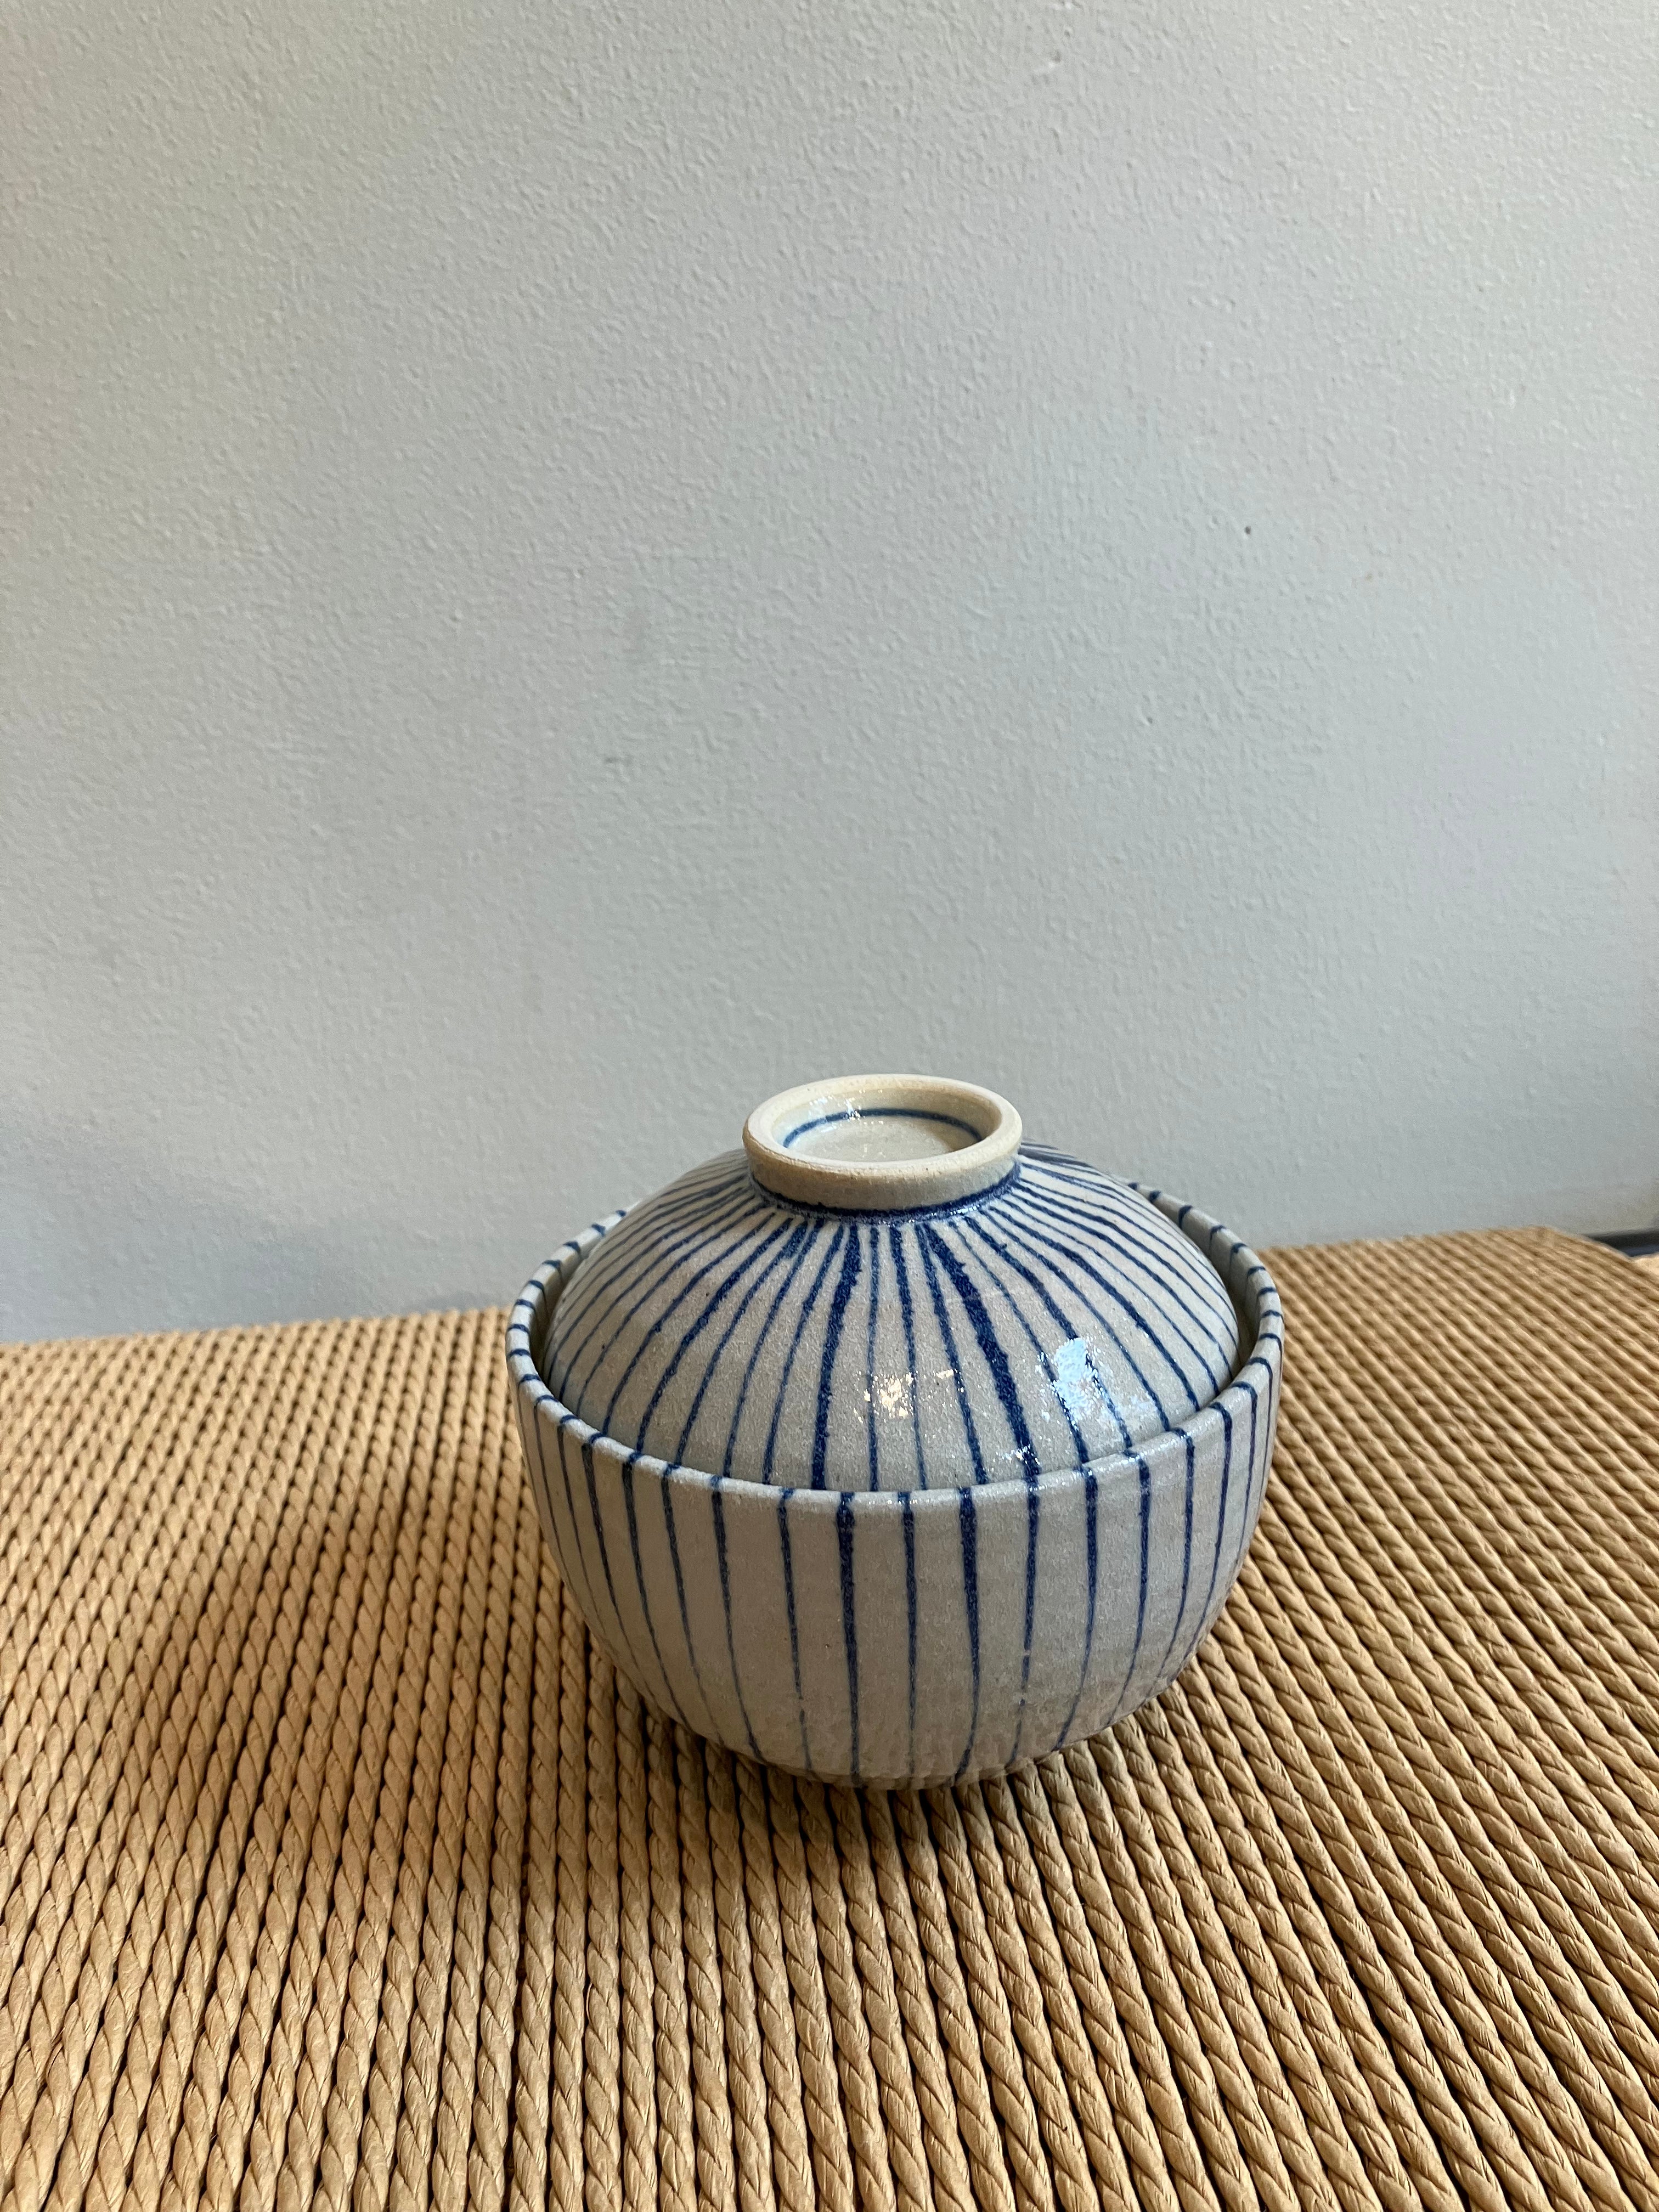 Large lidded jar with blue stripes